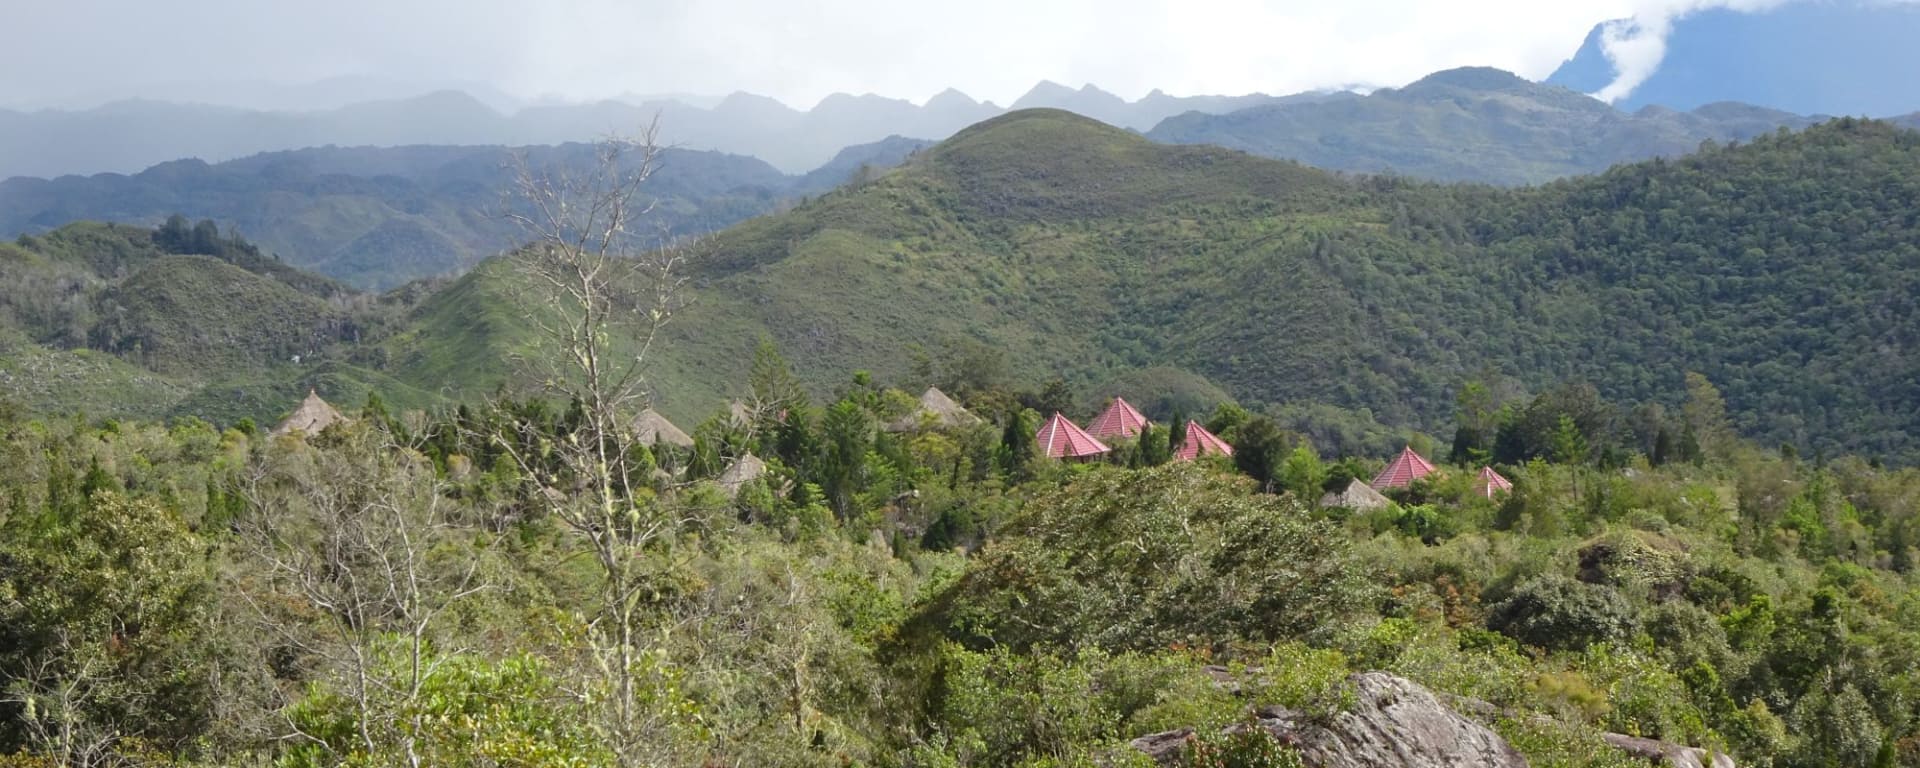 Papua - Reise in eine andere Zeit ab Jayapura: View over Baliem Valley Resort